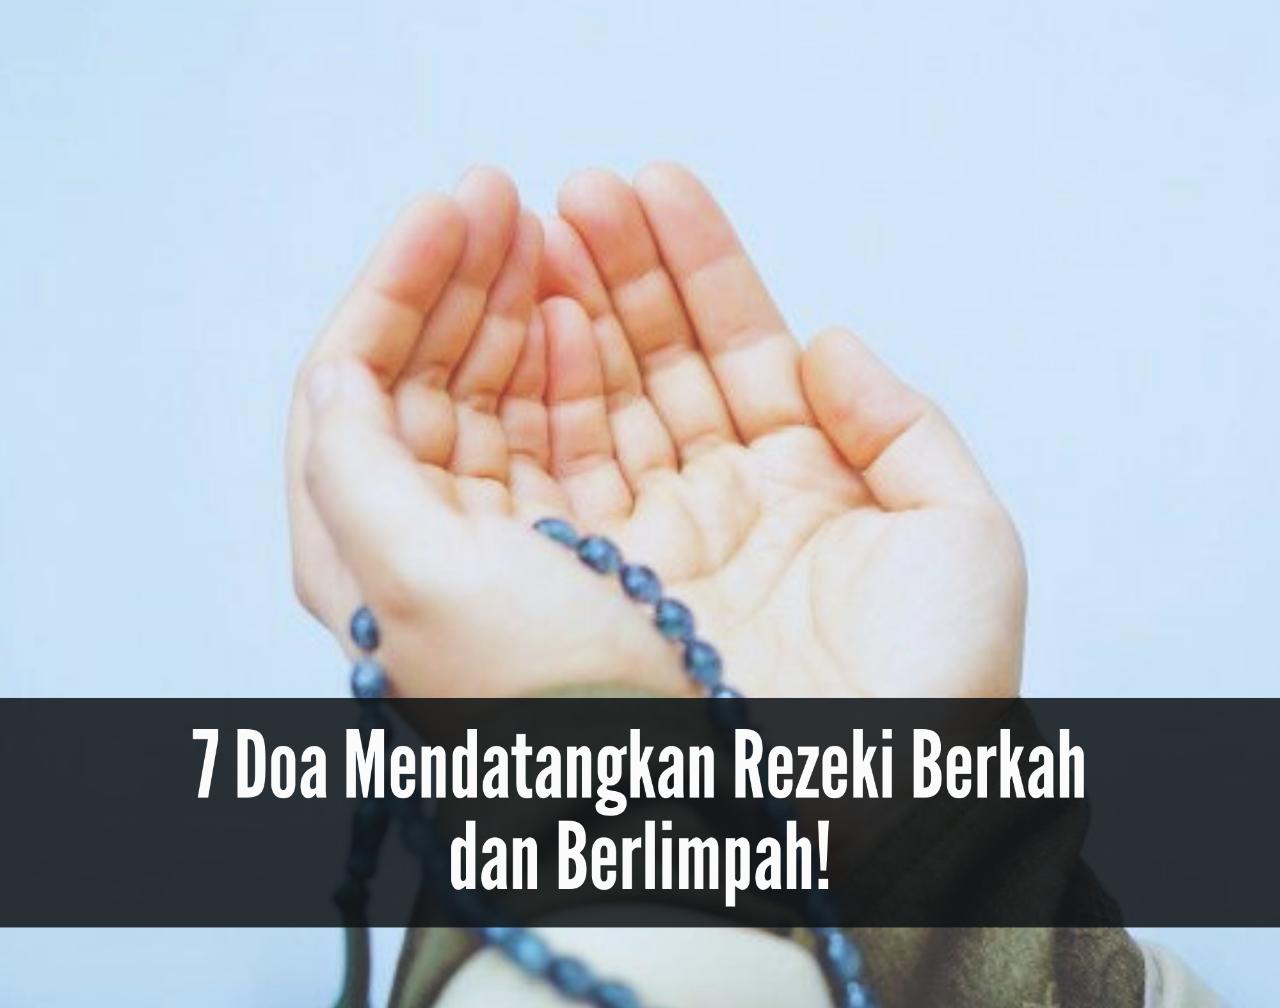  Terus Mengalir, 7 Doa Mendatangkan Rezeki Berkah Berlimpah, Segera Amalkan!